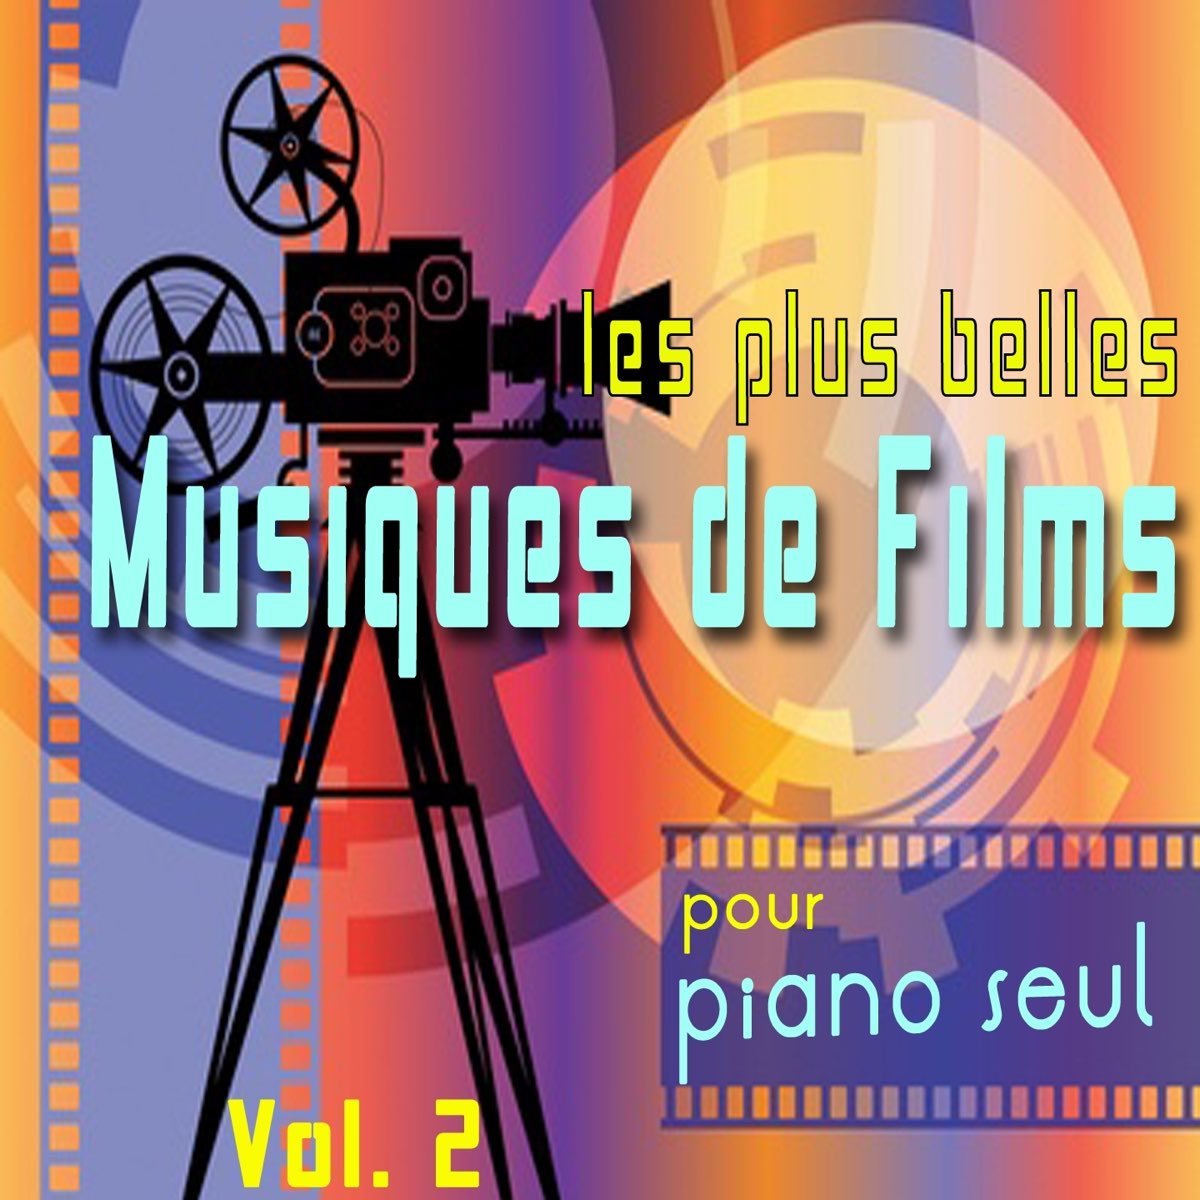 Les plus belles musiques de films pour piano seul, Vol. 2 par Michele  Garruti & Giampaolo Pasquile sur Apple Music